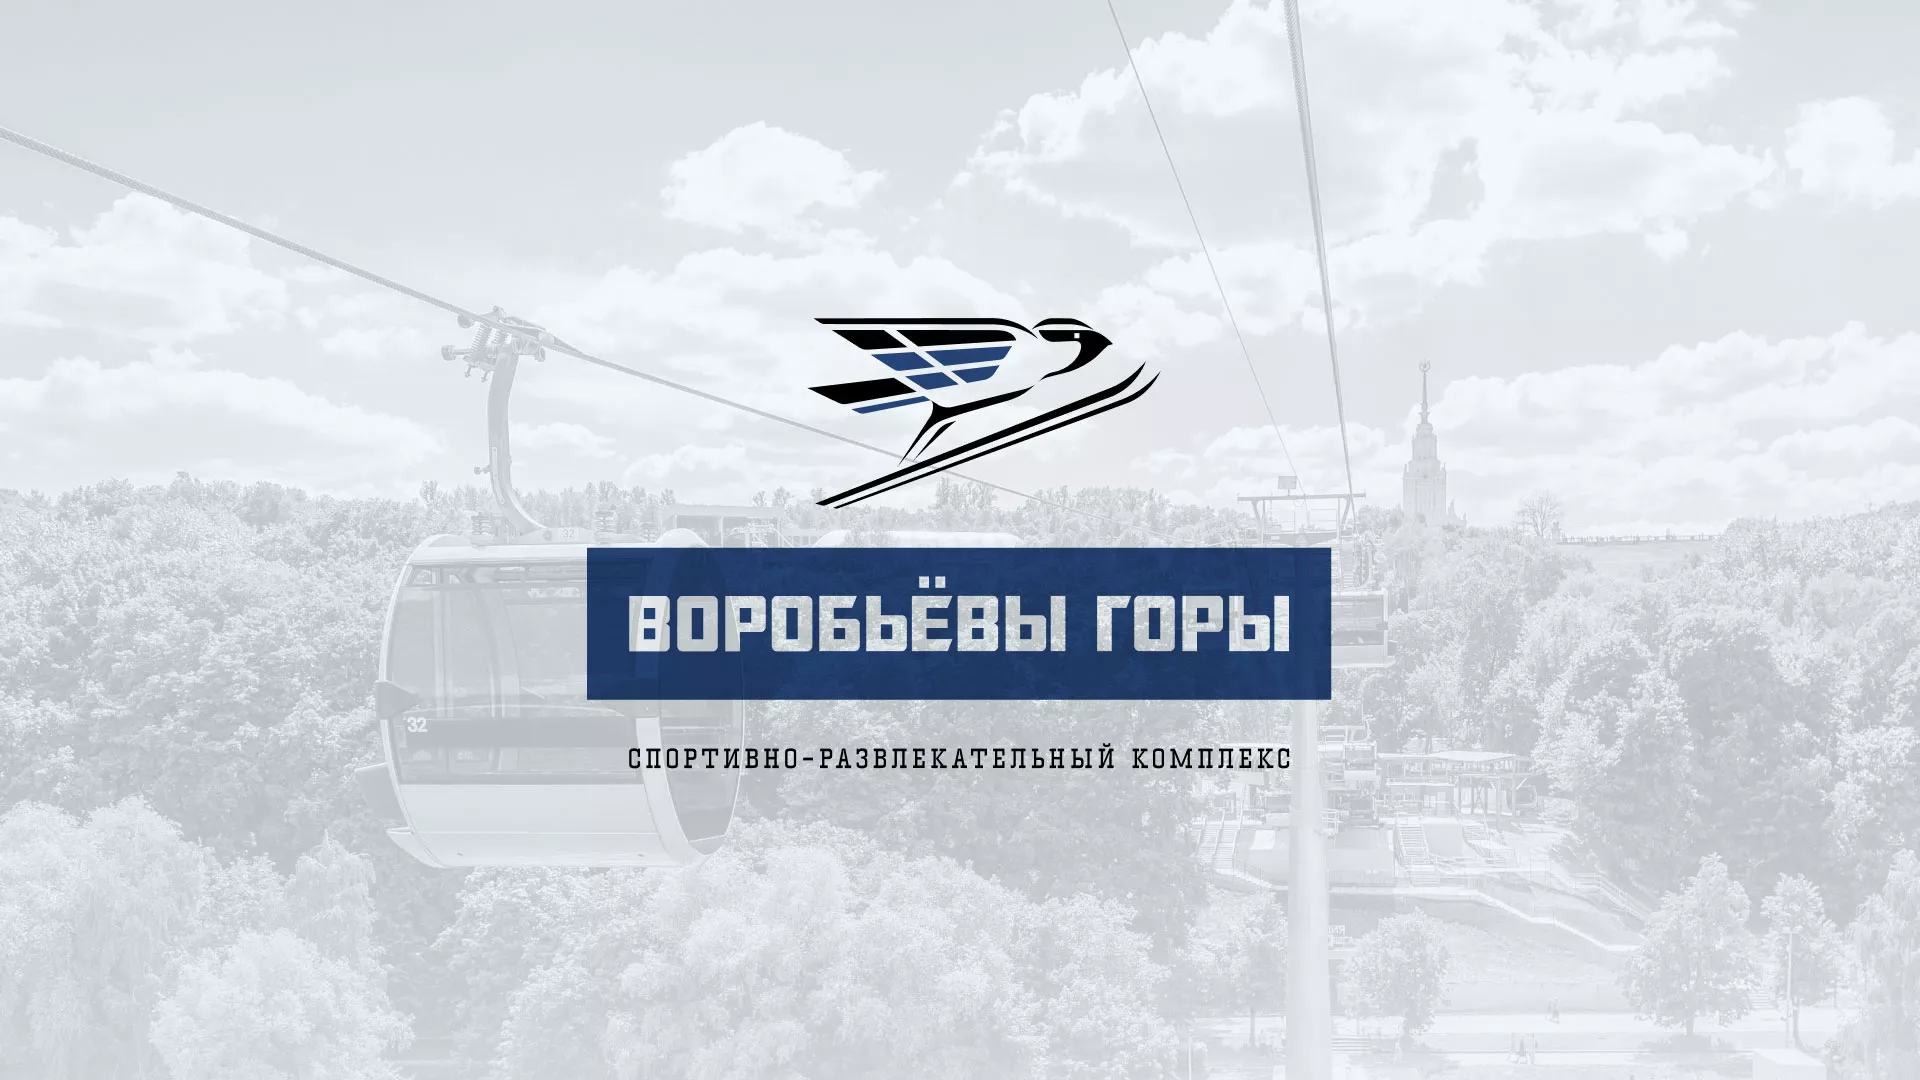 Разработка сайта в Серпухове для спортивно-развлекательного комплекса «Воробьёвы горы»